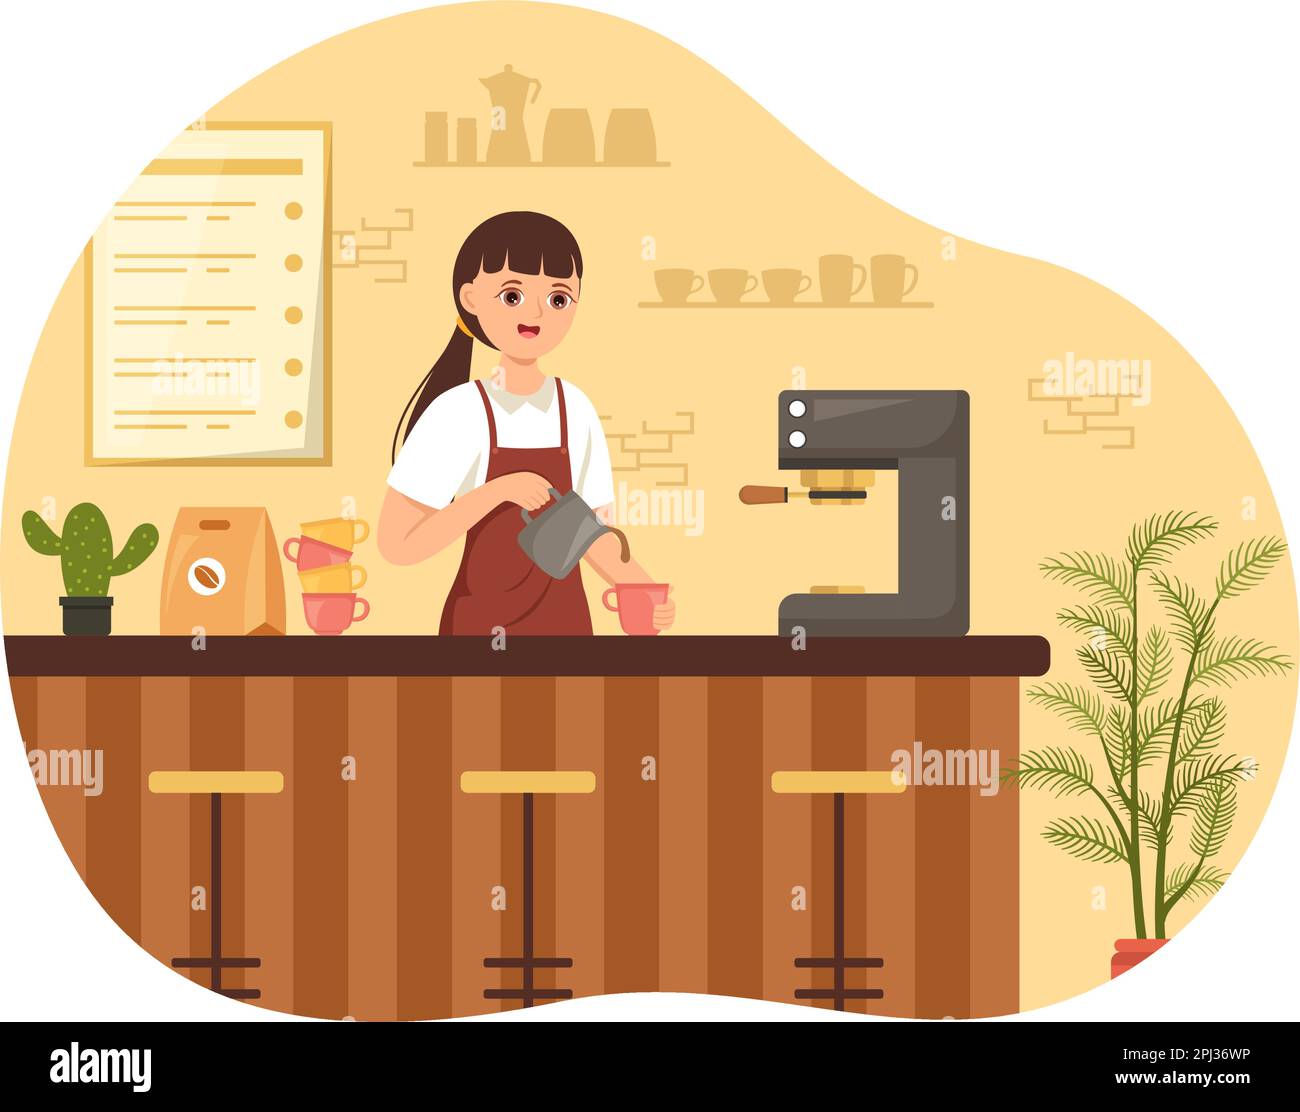 Barista Illustration: Tragen einer Stehschürze zum Zubereiten von Kaffee für Gäste in einer flachen, handgezeichneten Landing-Page oder Webbannervorlage Stock Vektor